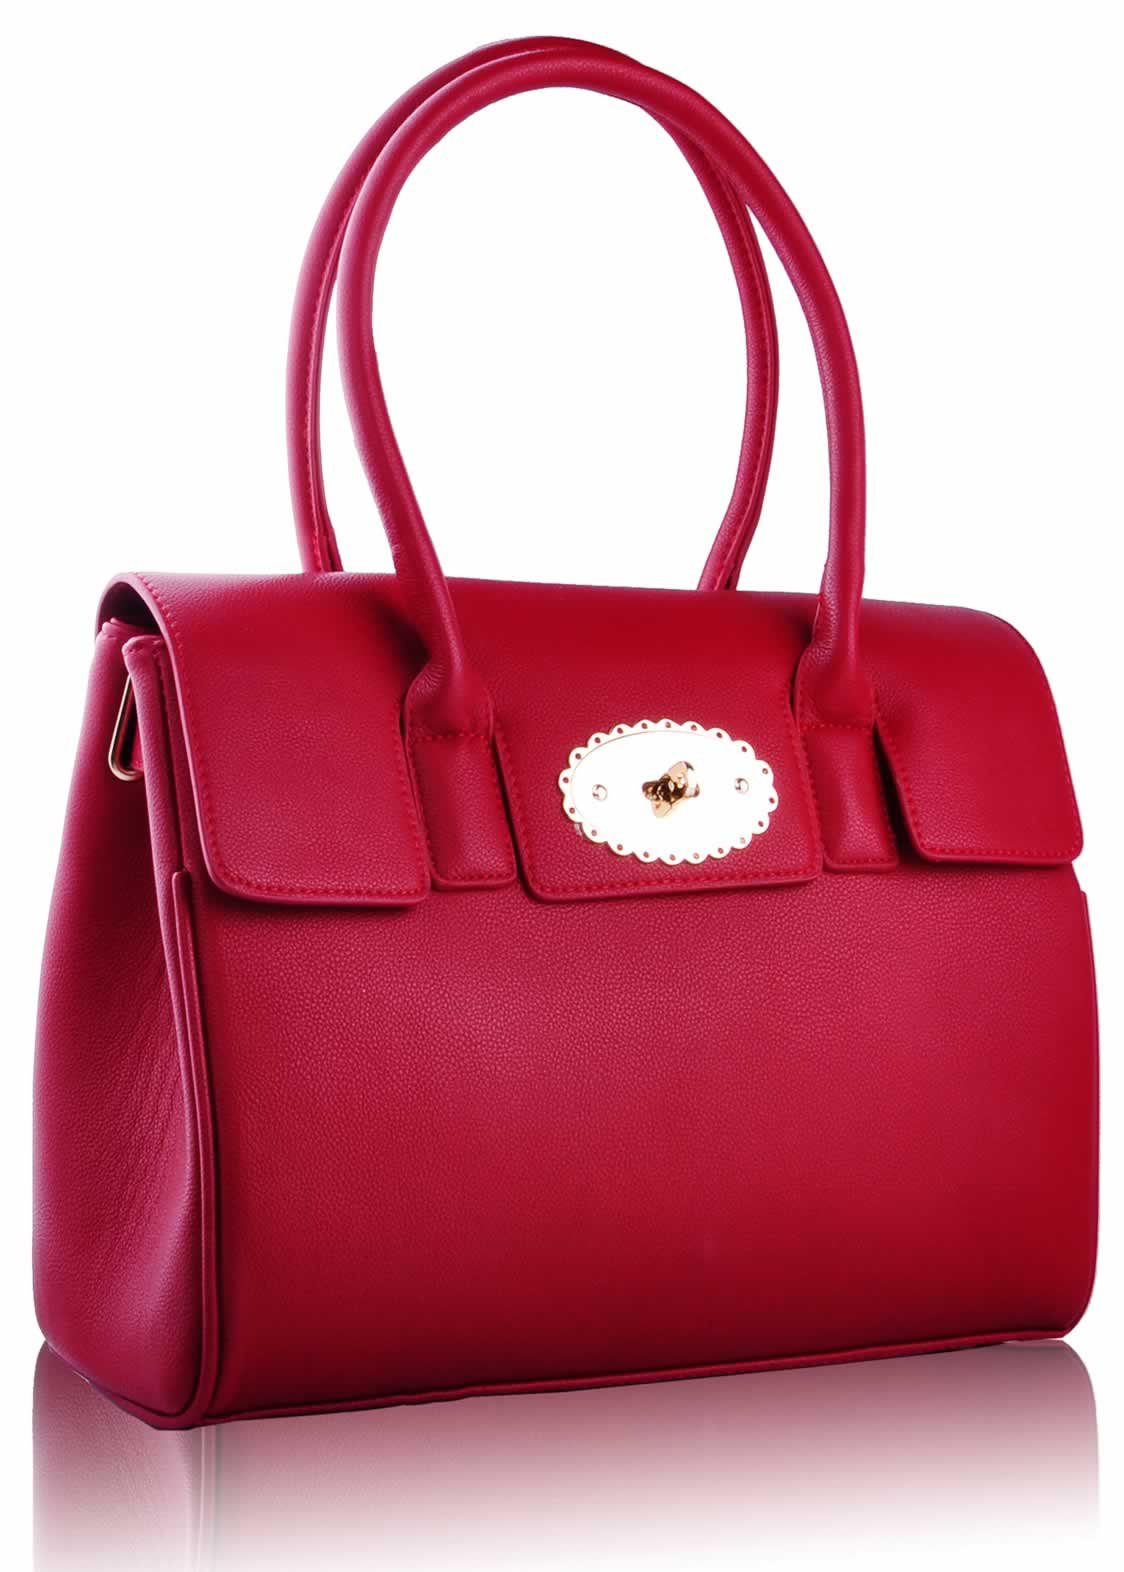 Wholesale Luxury Red Satchel grab Handbag